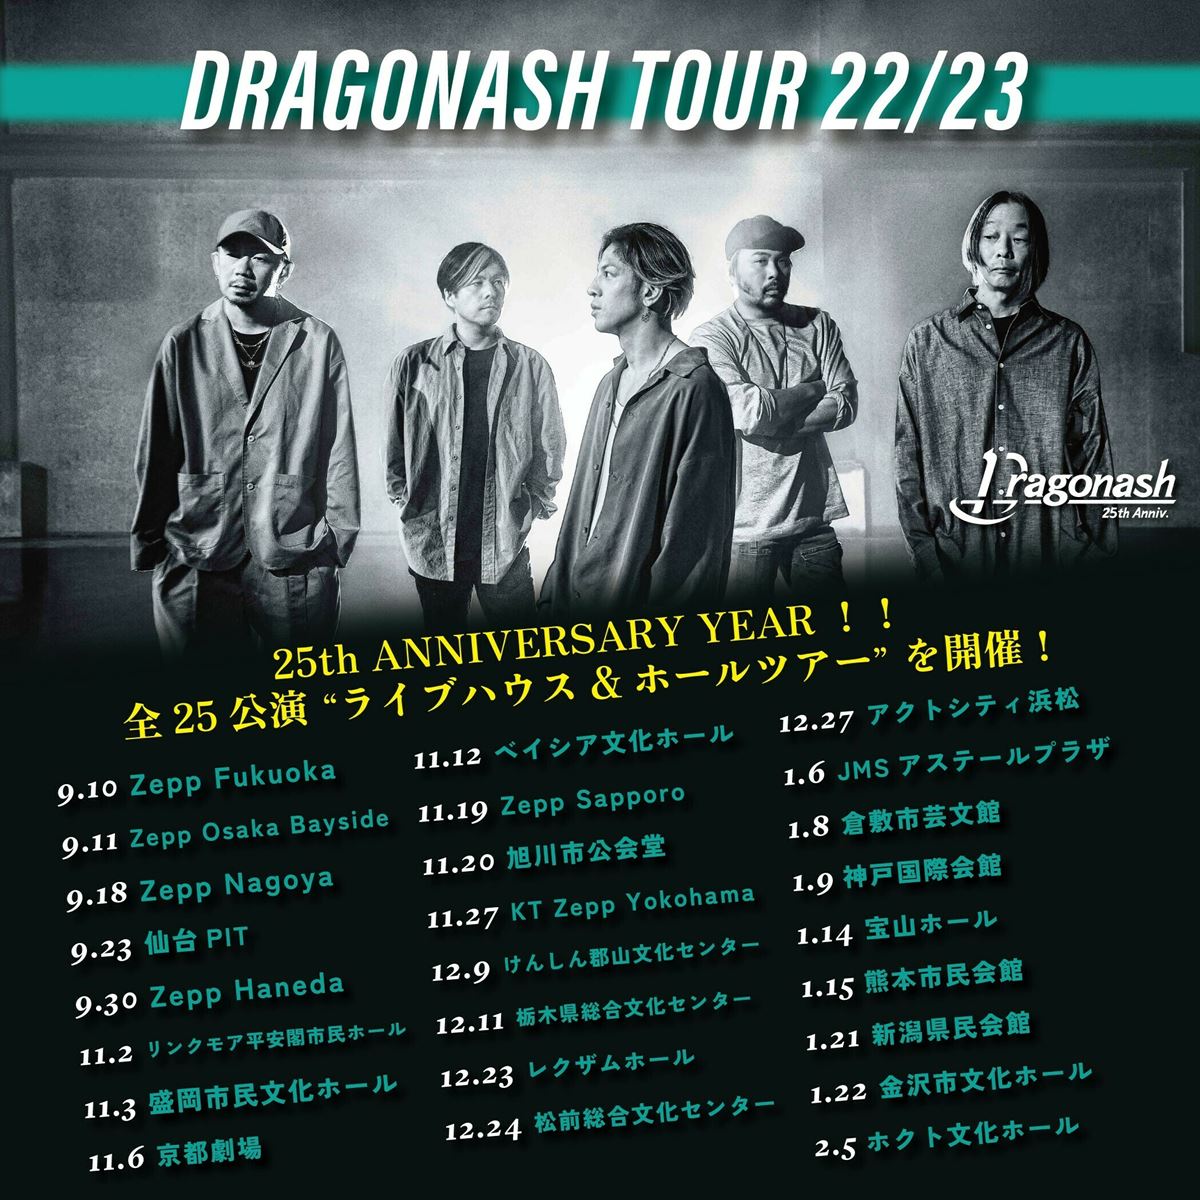 Dragon Ash、デビュー25周年ツアーに向けて書き下ろした新曲